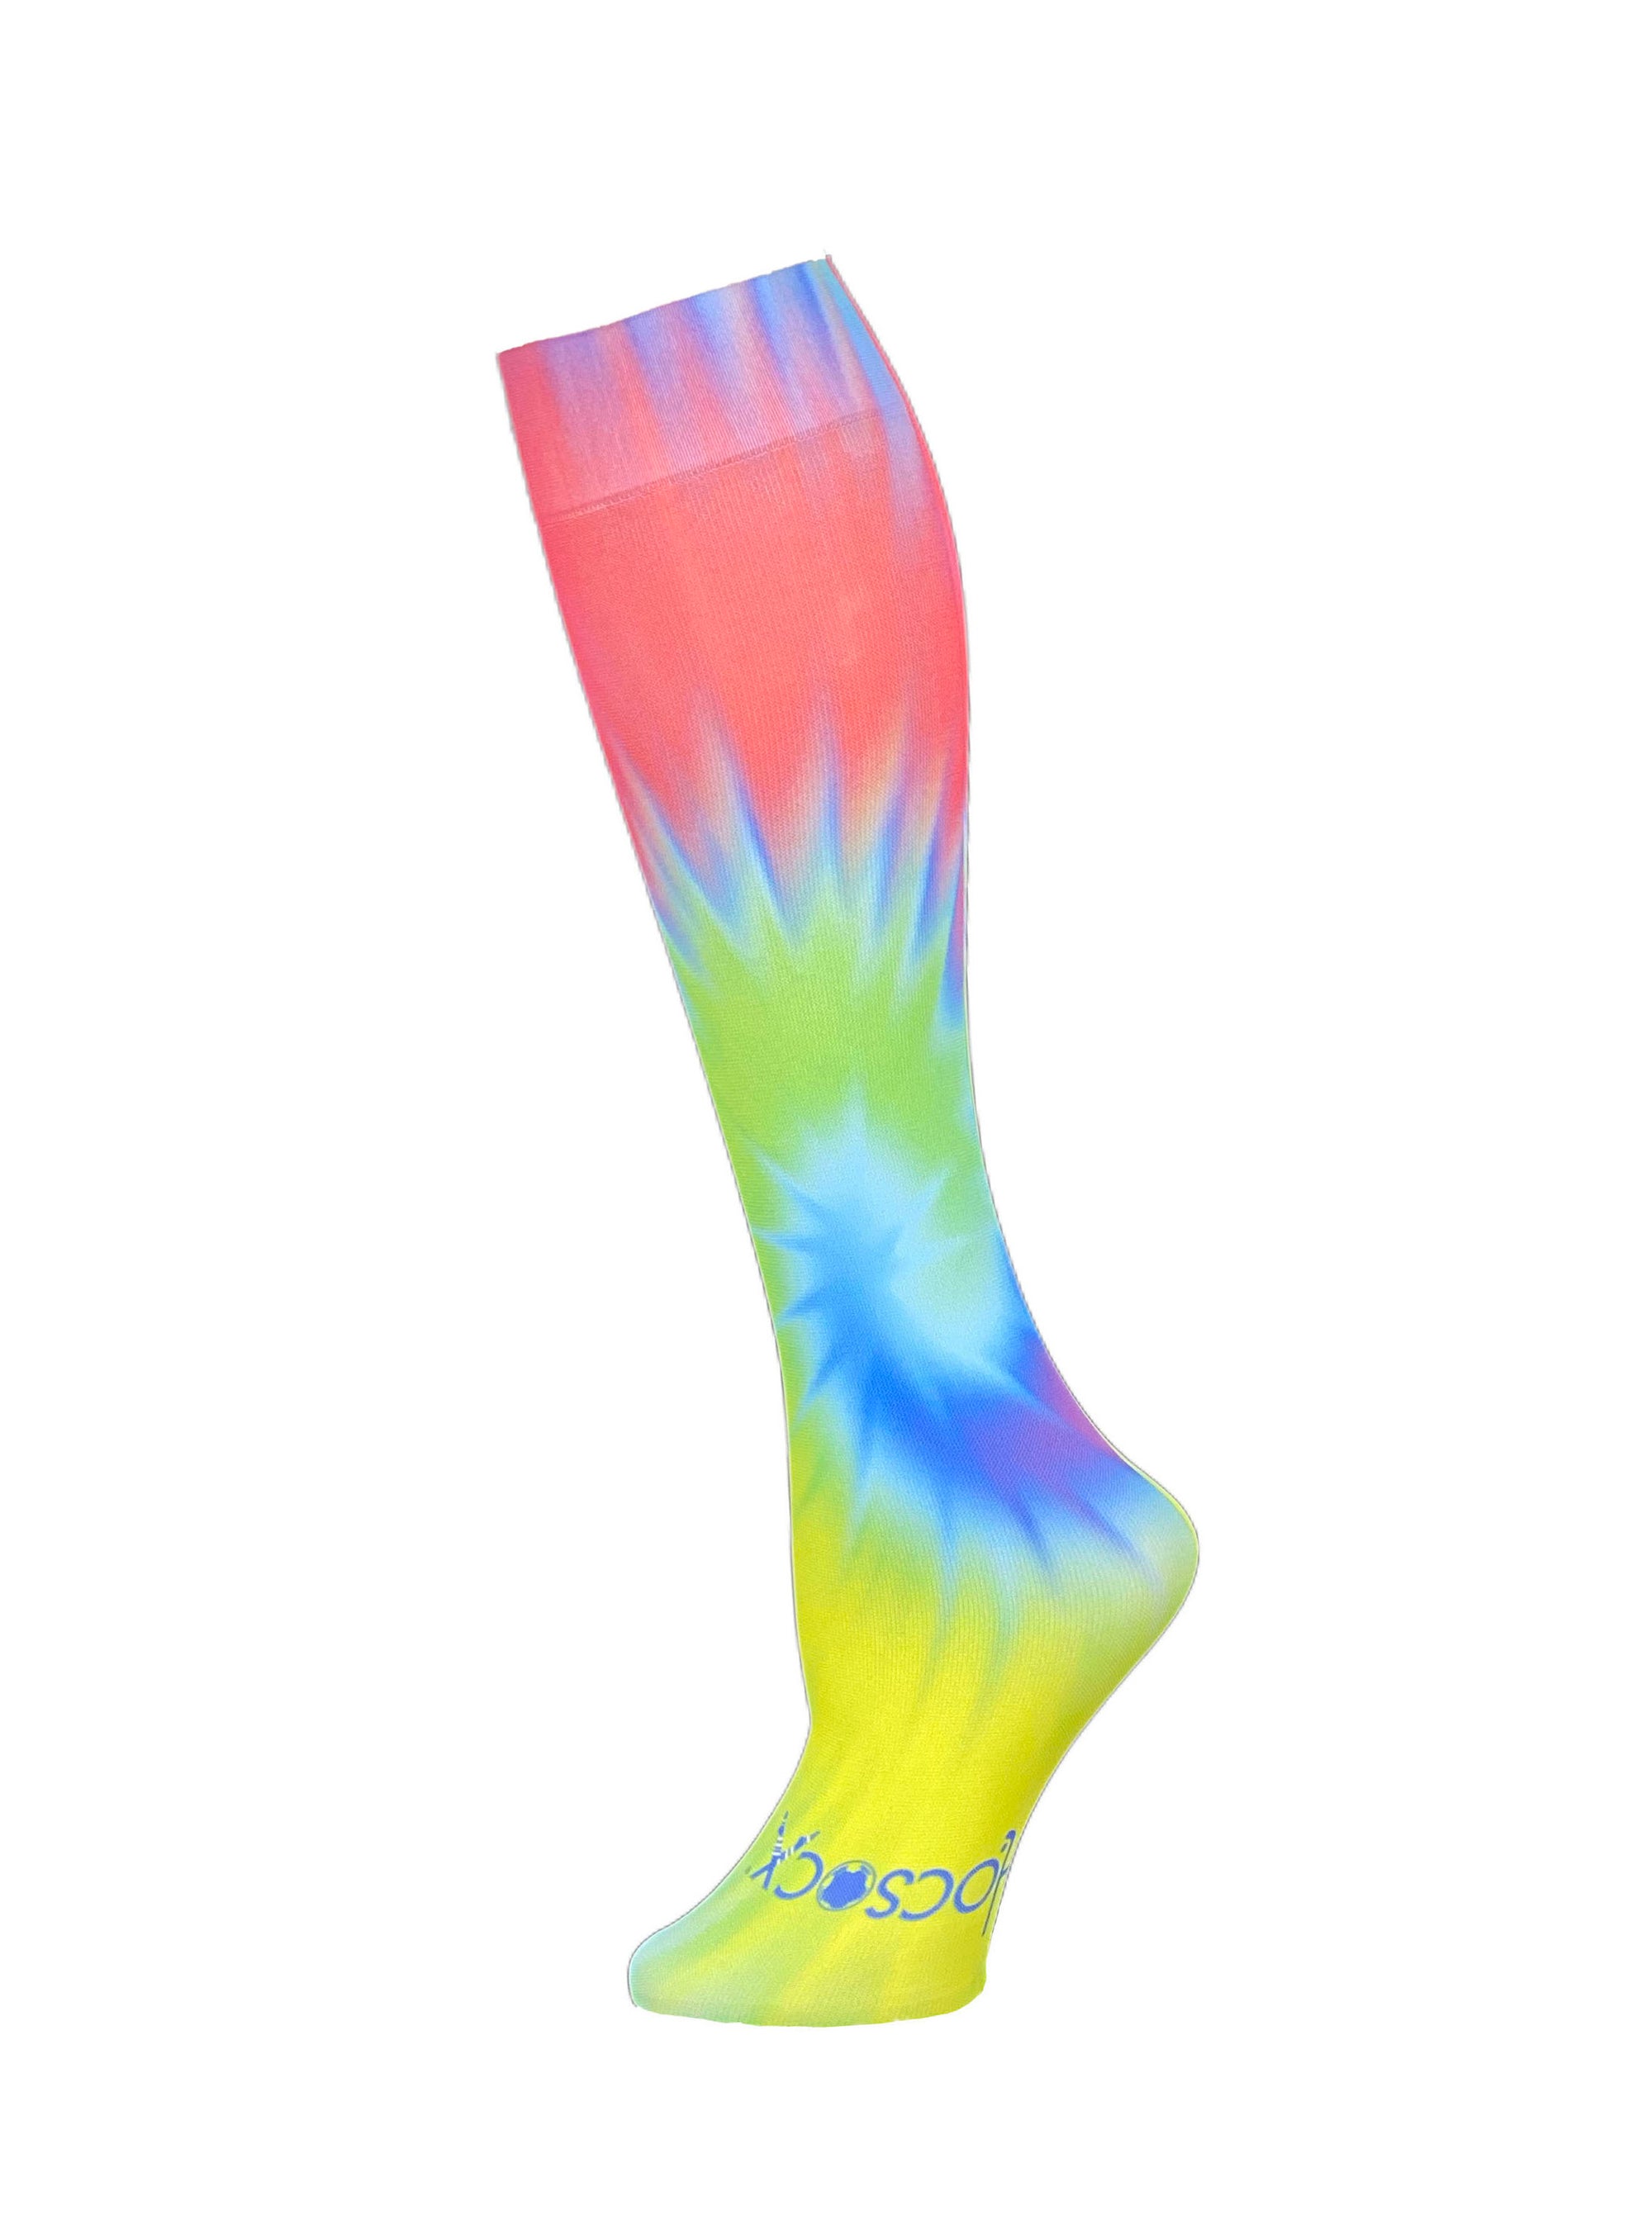 Psychedelic Tie-Dye Socks